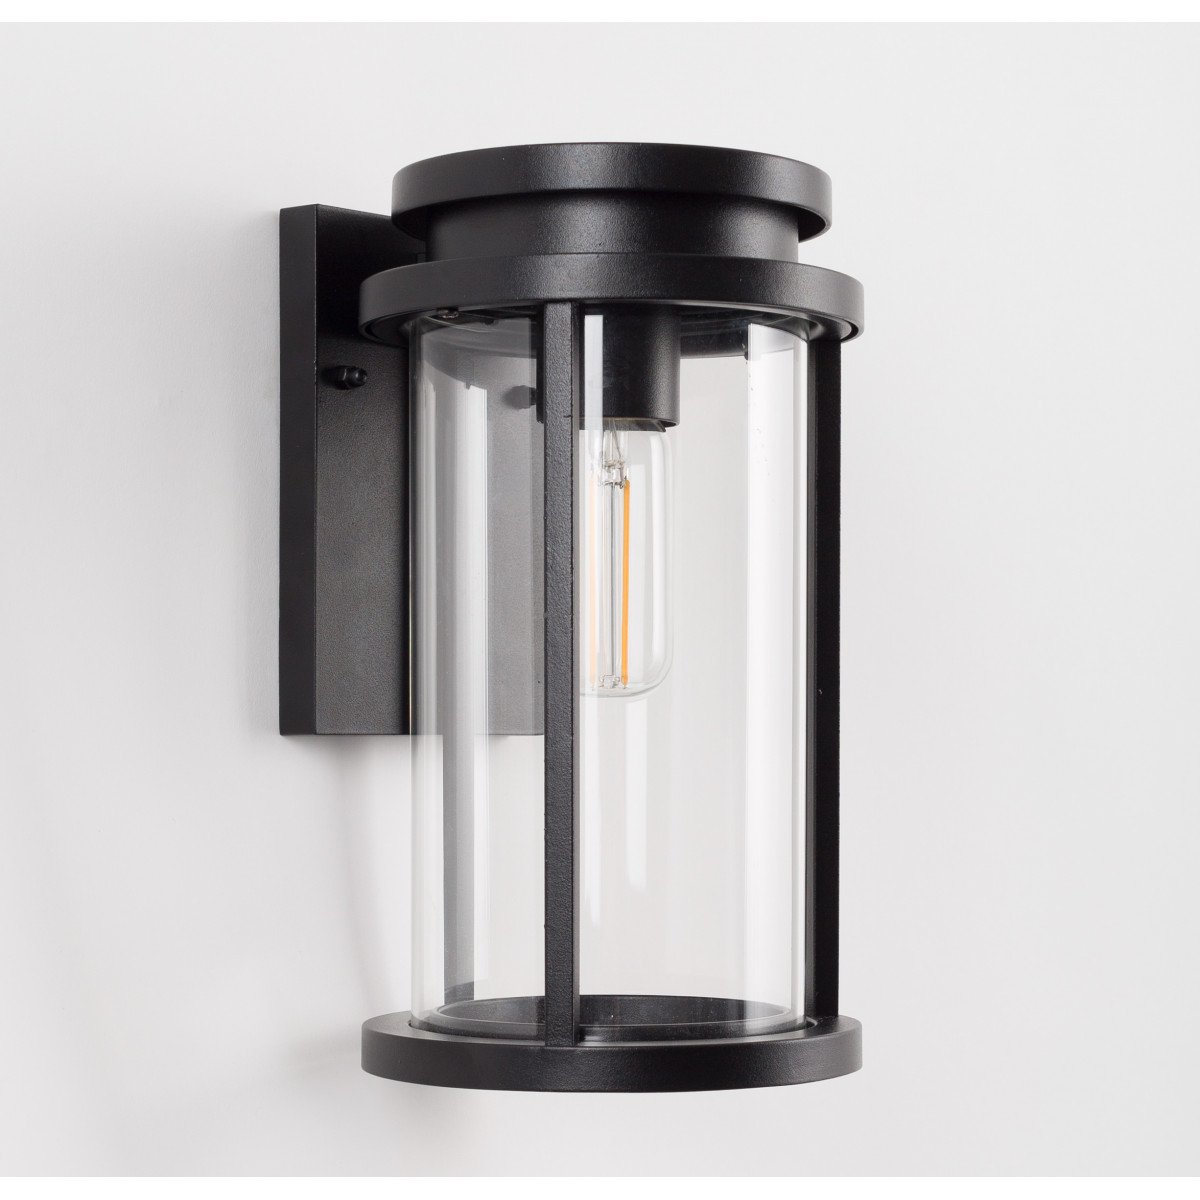 Lampe d'extérieur, noire, plaque arrière de fixation noire rectangulaire, abat-jour lanterne cylindrique avec verre clair, culot E27, éclairage moderne et élégant pour l'extérieur 